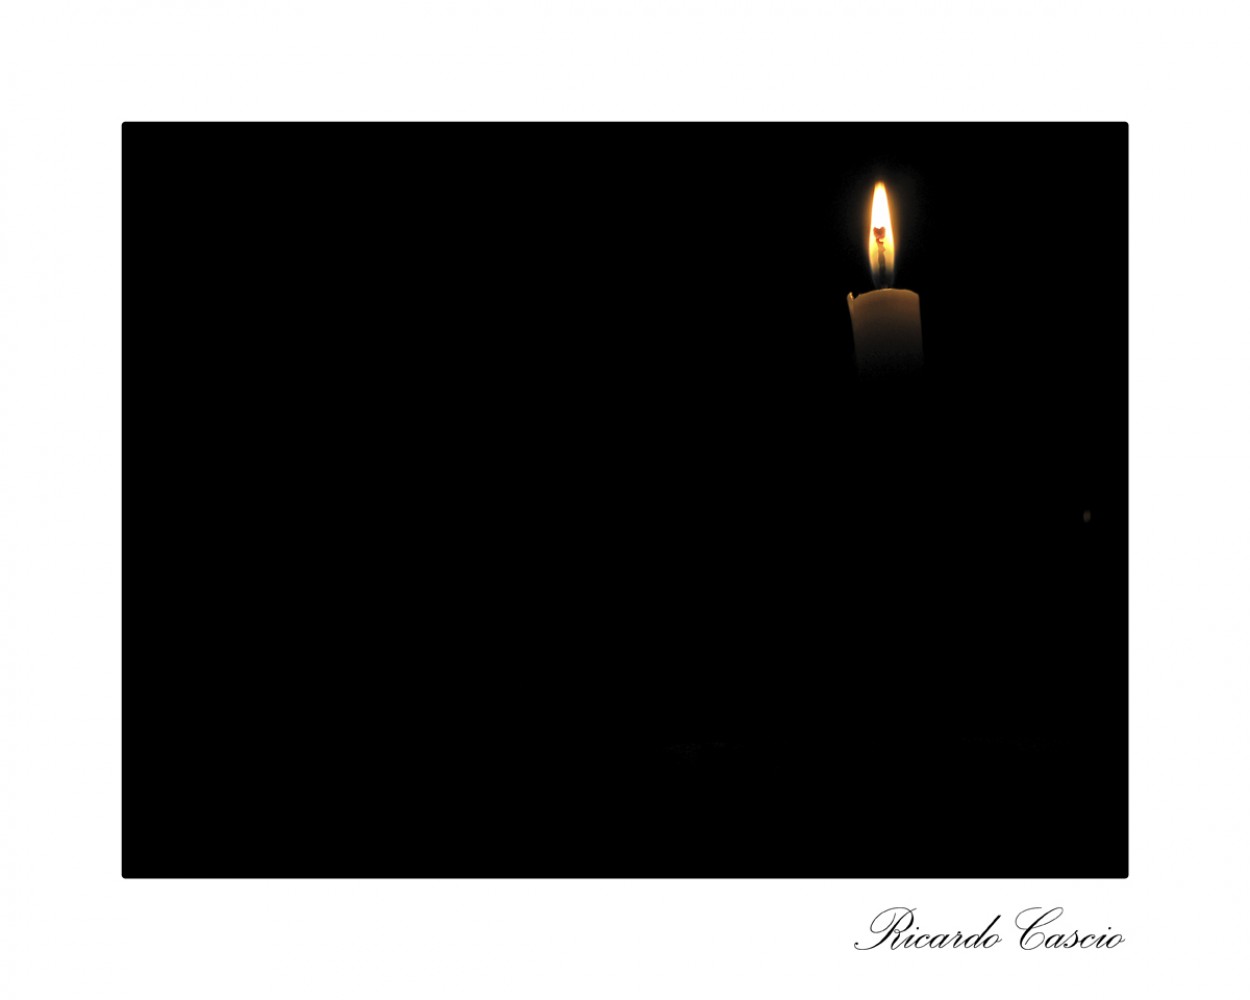 "Siempre hay una luz" de Ricardo Cascio